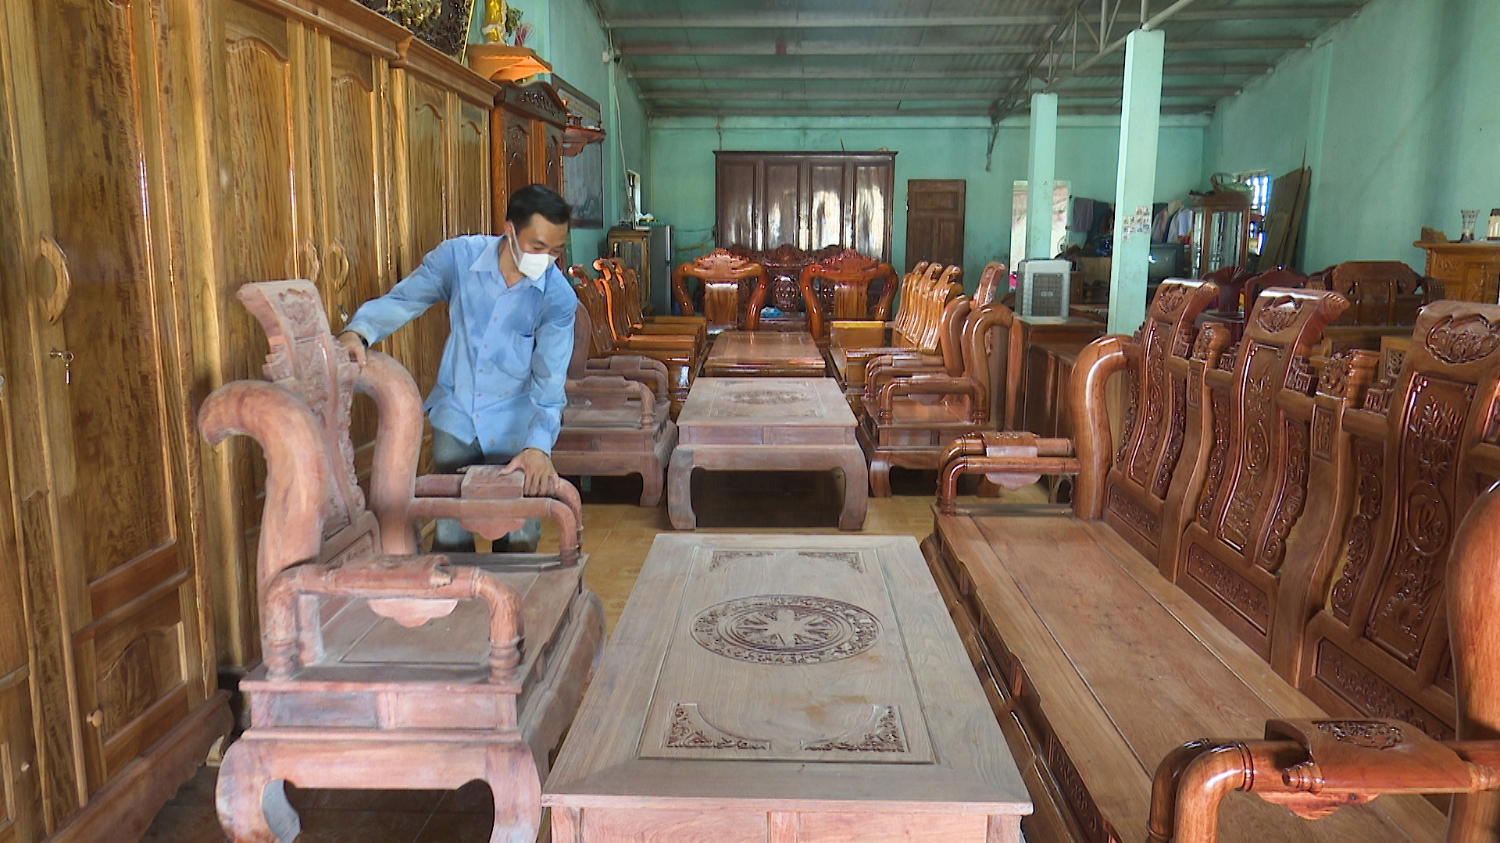 Cơ sở mộc mỹ nghệ của anh Nguyễn Tuấn Hải, thôn Vân Đông, xã Quảng Hải hoạt động hiệu quả đem lại thu nhập ổn định cho gia đình góp phần phát triển kinh tế của địa phương.